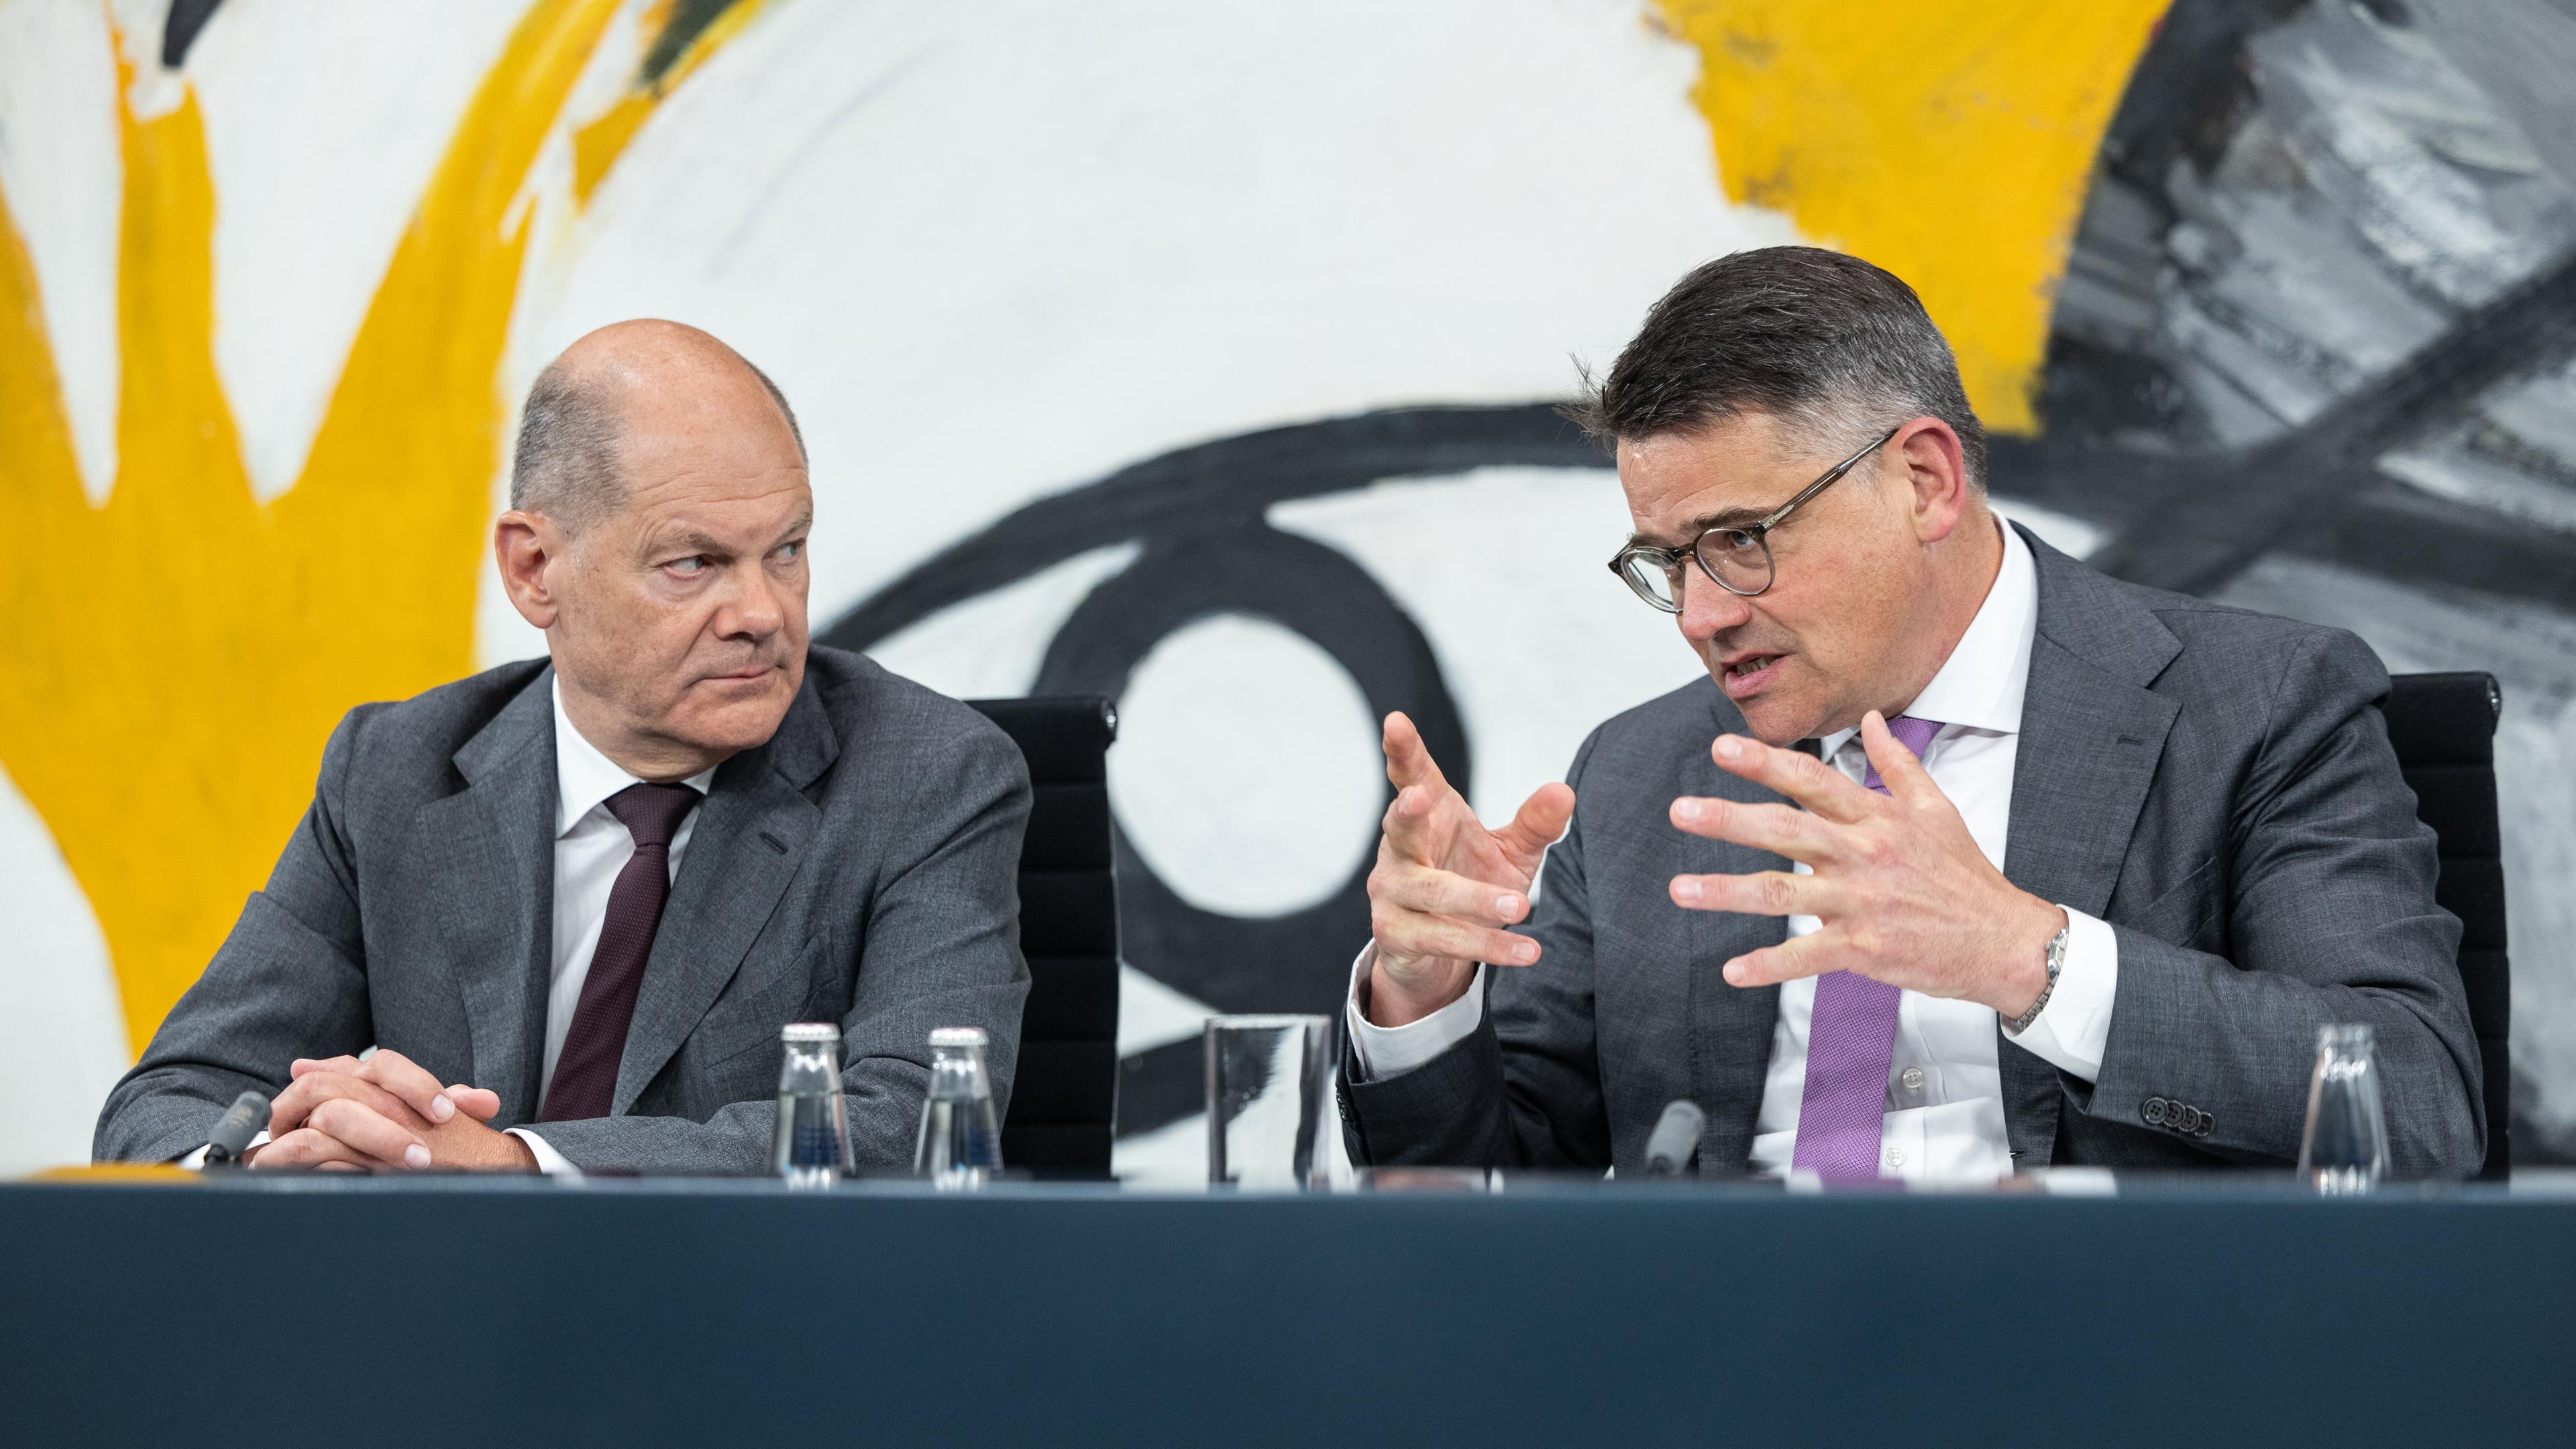 20.06.2024, Berlin: Boris Rhein (CDU, r), Ministerpräsident von Hessen, spricht auf einer Pressekonferenz während der Ministerpräsidentenkonferenz im Bundeskanzleramt. Bundeskanzler, Olaf Scholz (SPD) sitzt neben ihm. Im Mittelpunkt wird die Migrationspolitik stehen.